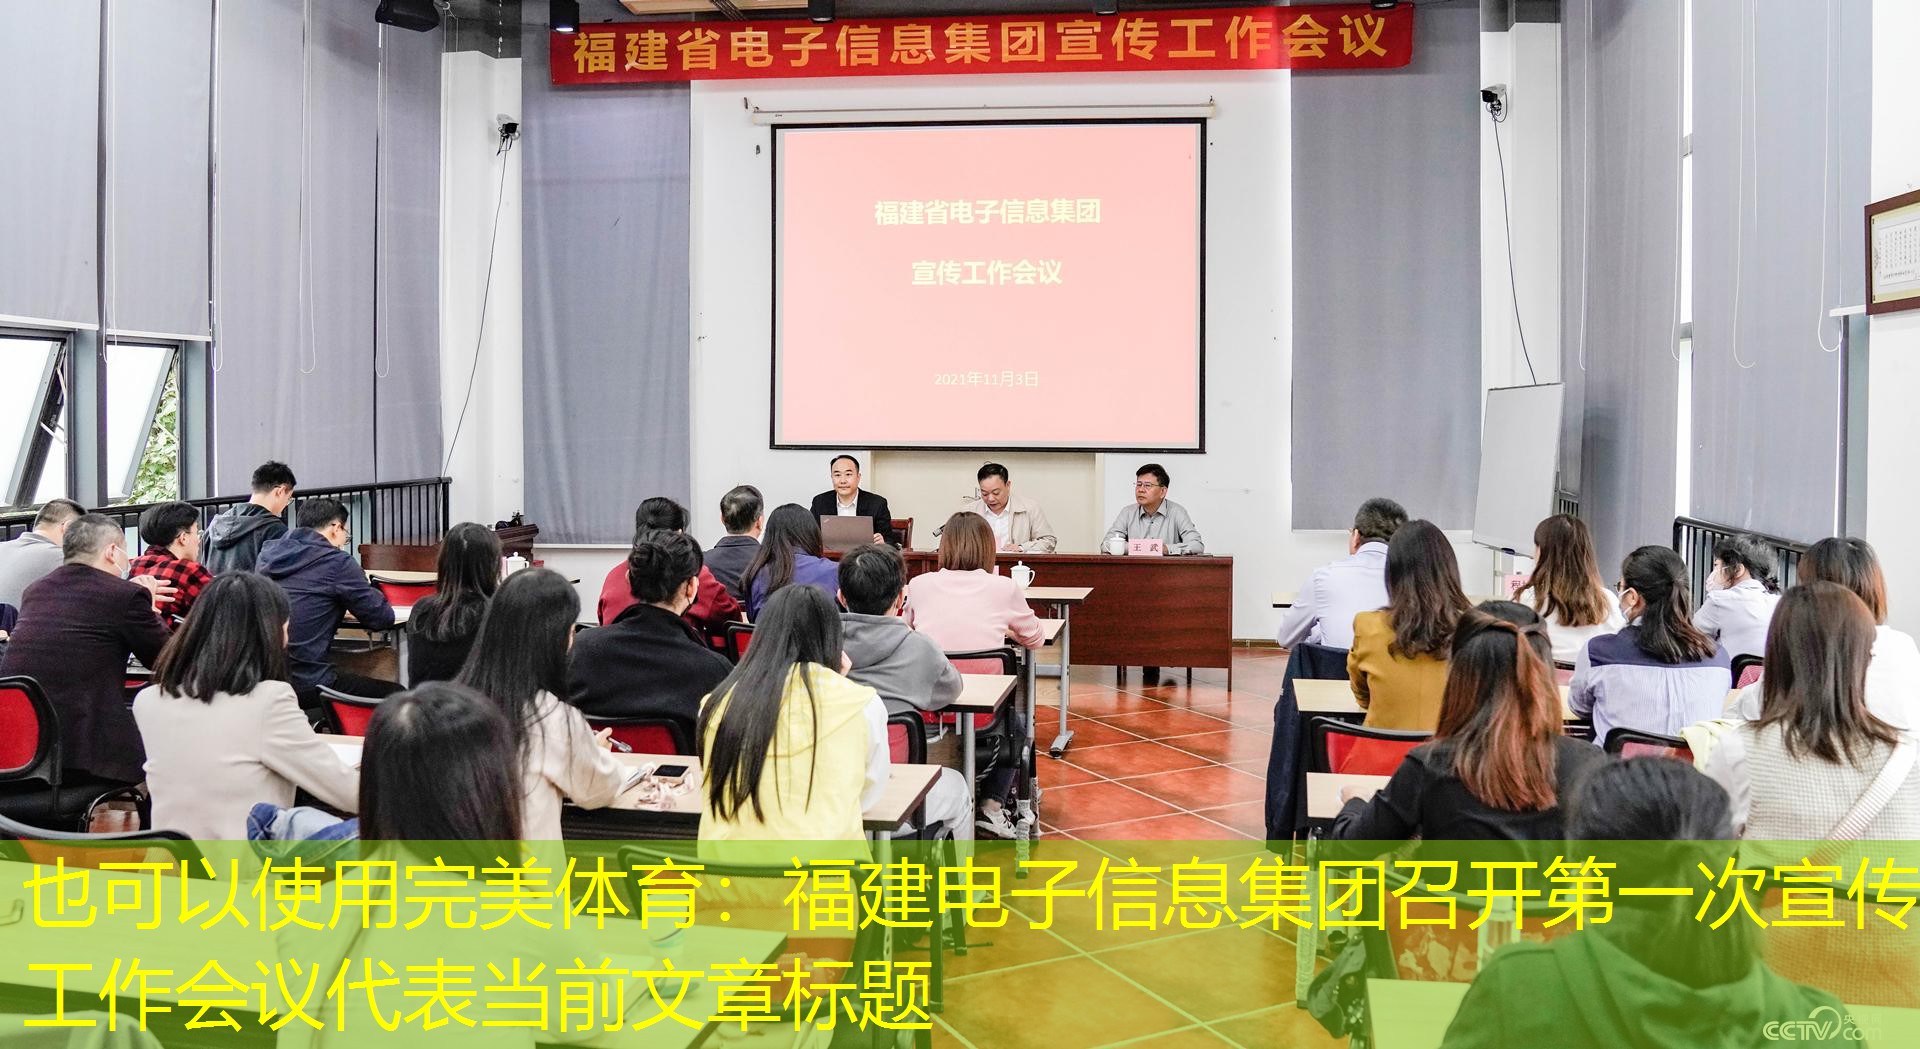 福建省电子信息集团宣传工作会议现场完美体育。